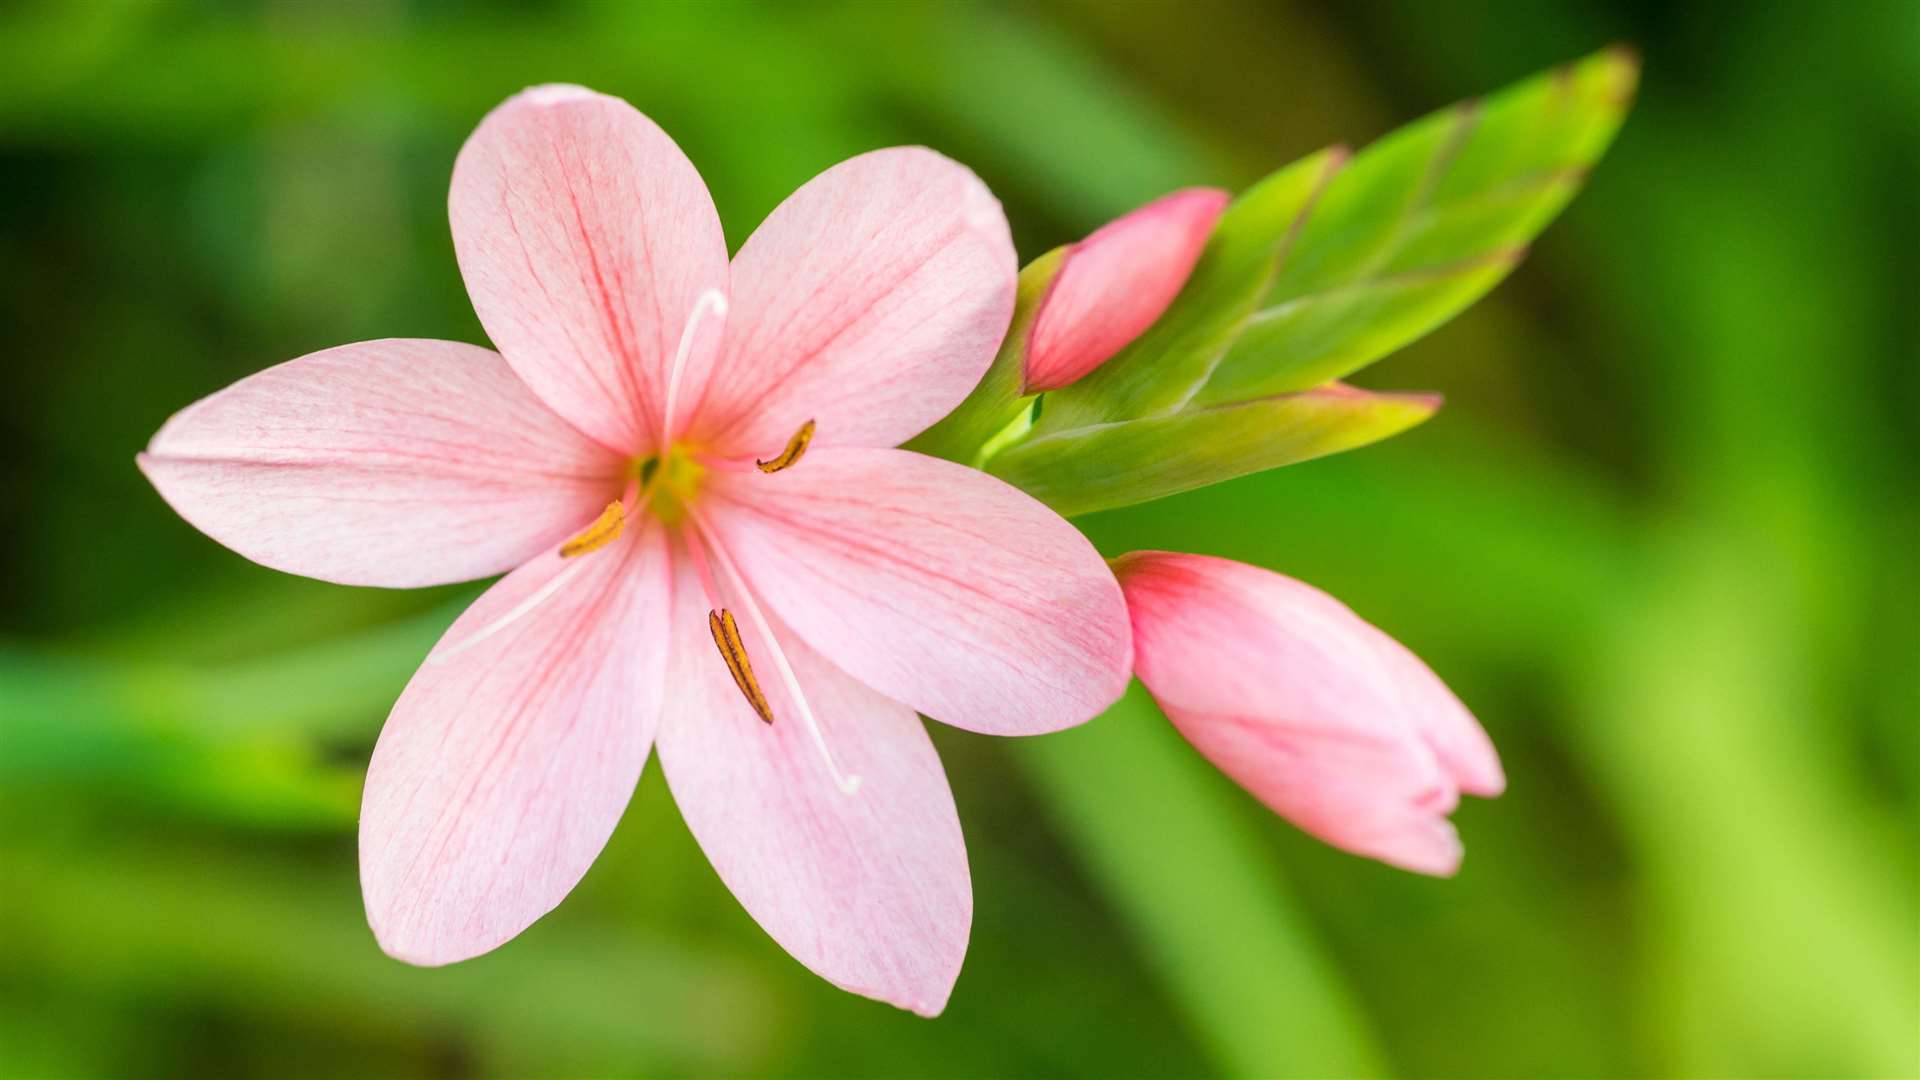 A Kaffir lily.